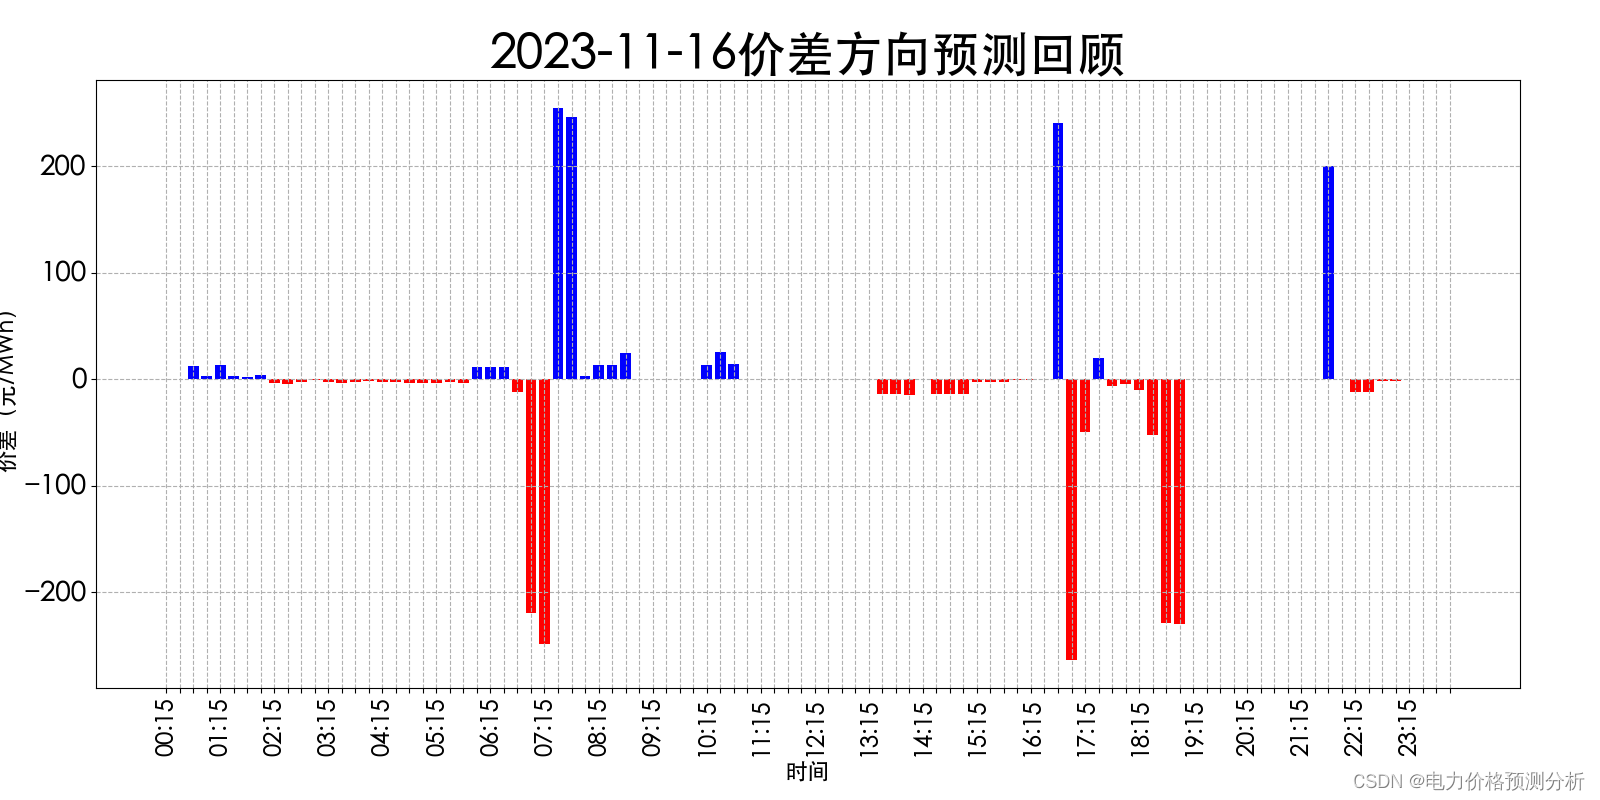 山西电力市场日前价格预测【2023-11-18】